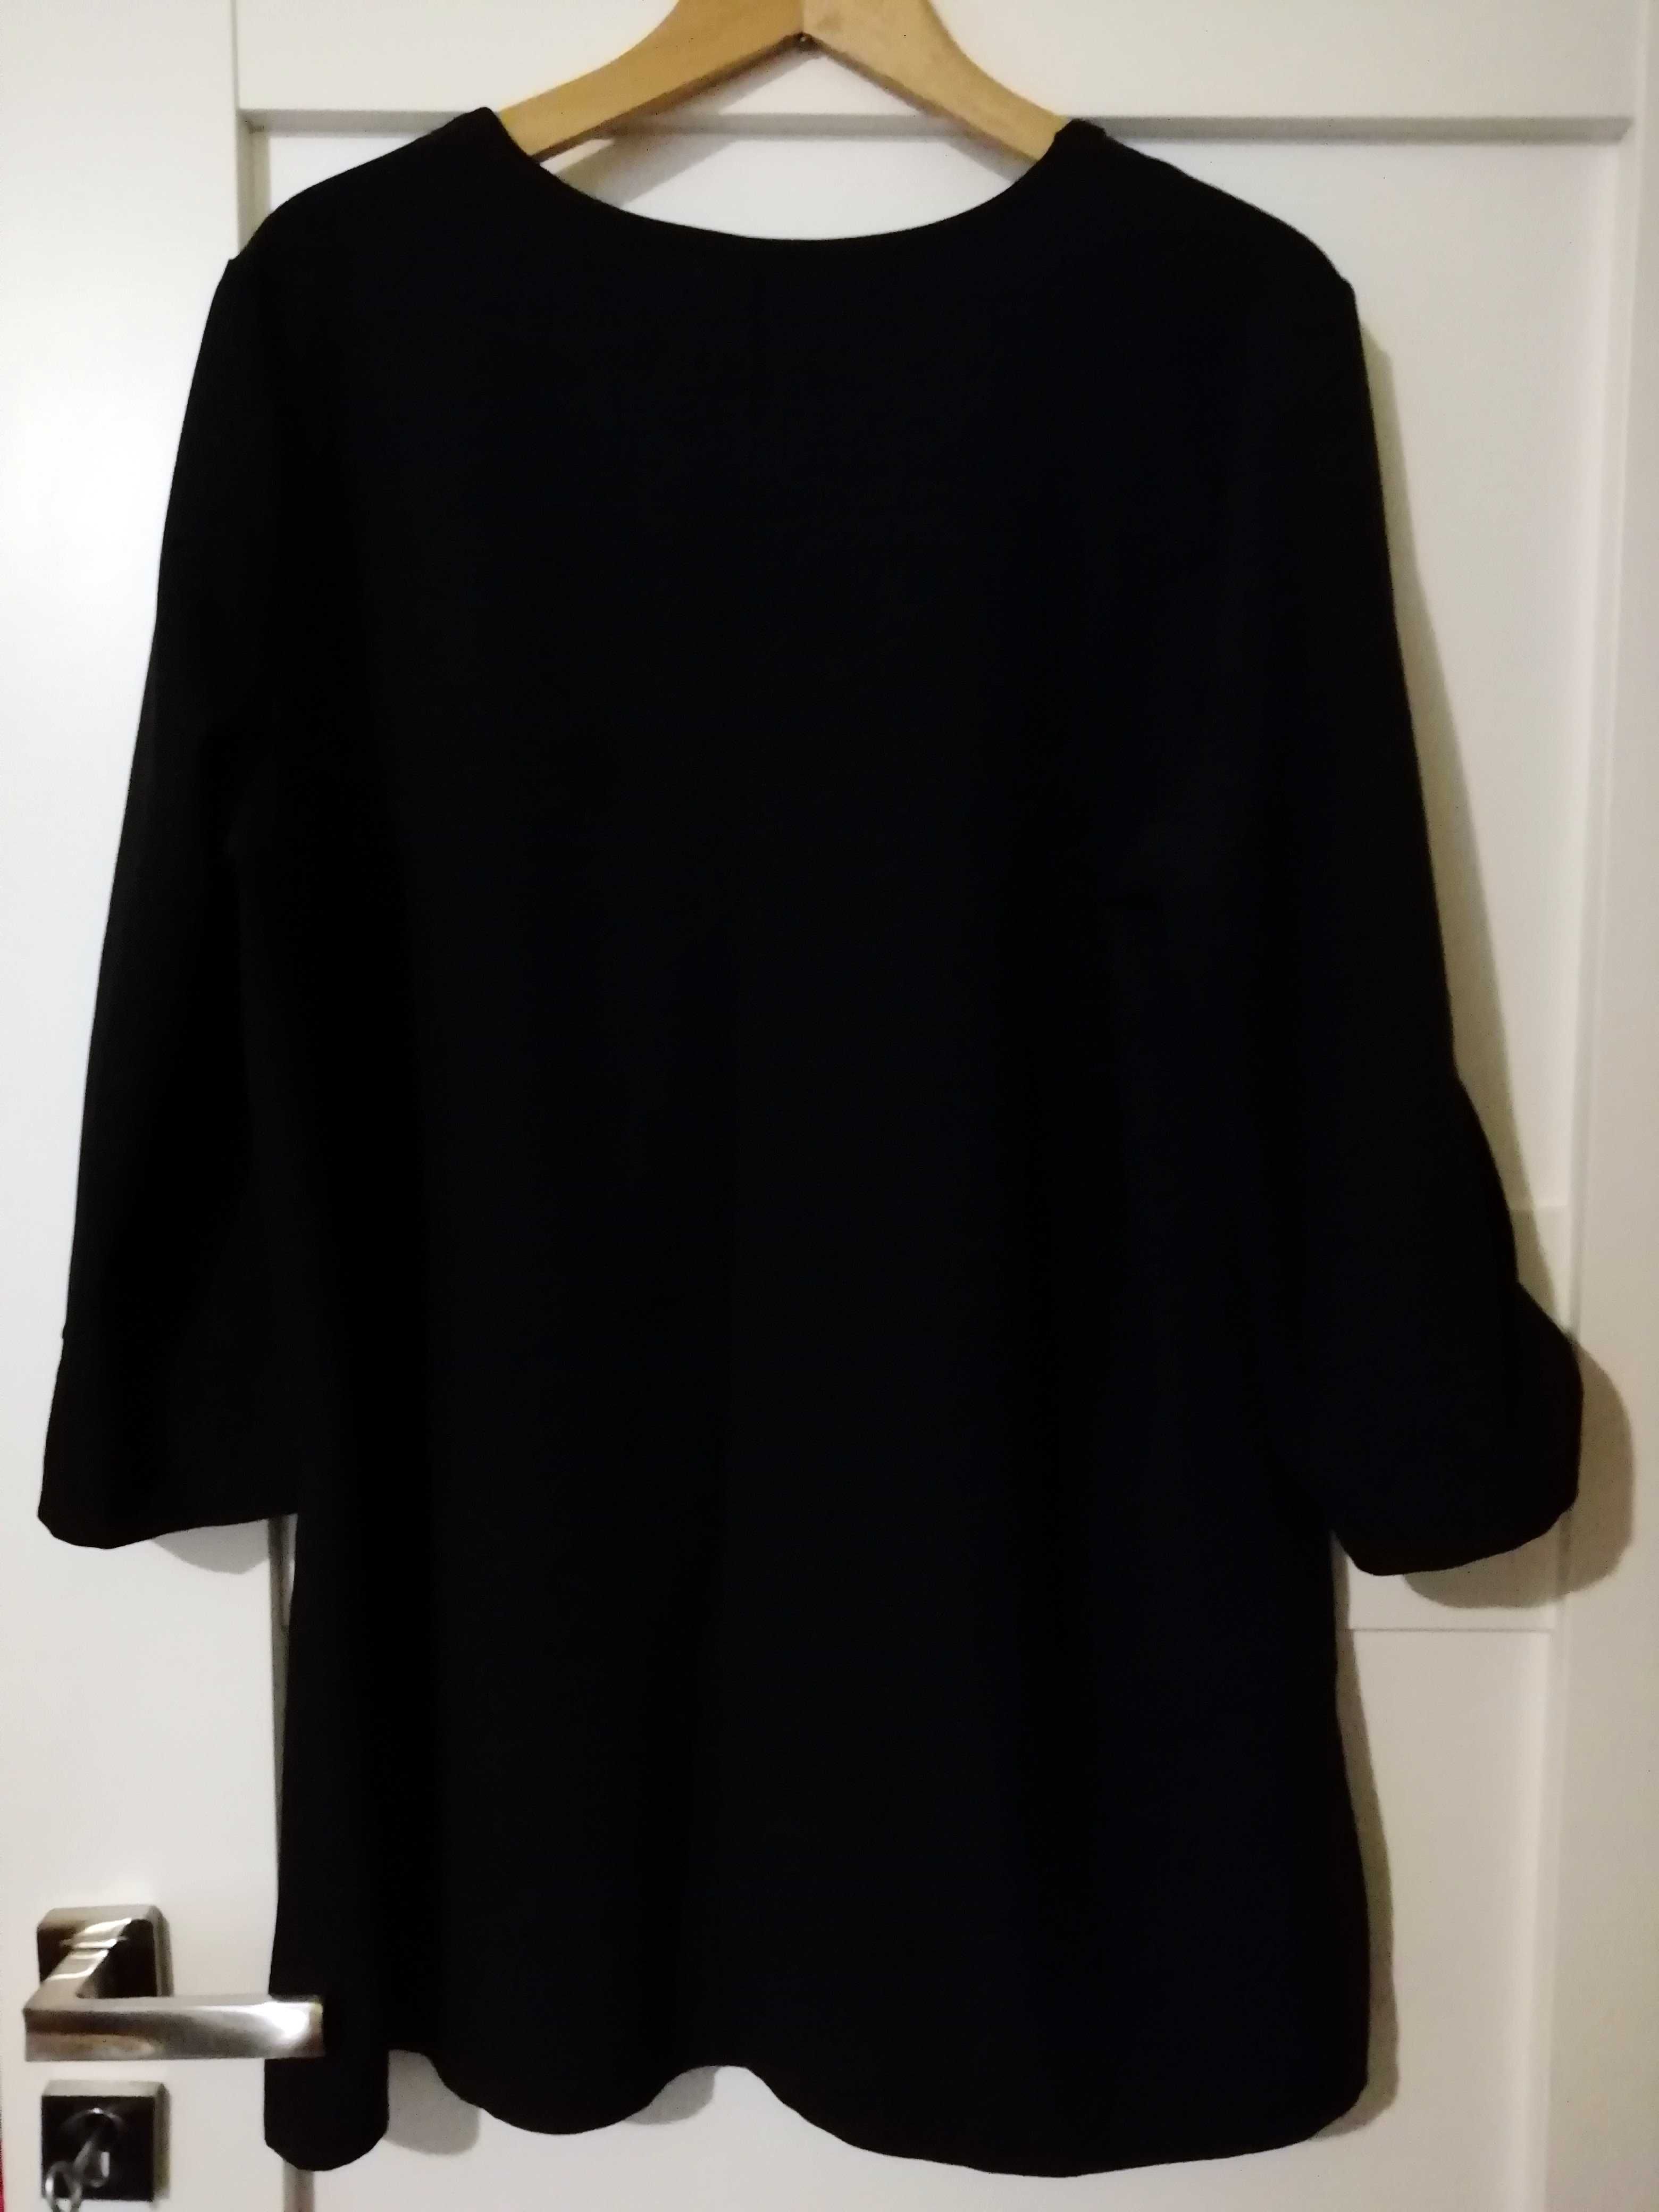 Eleganska sukienka Plus Size (mozliwa wymiana) XL